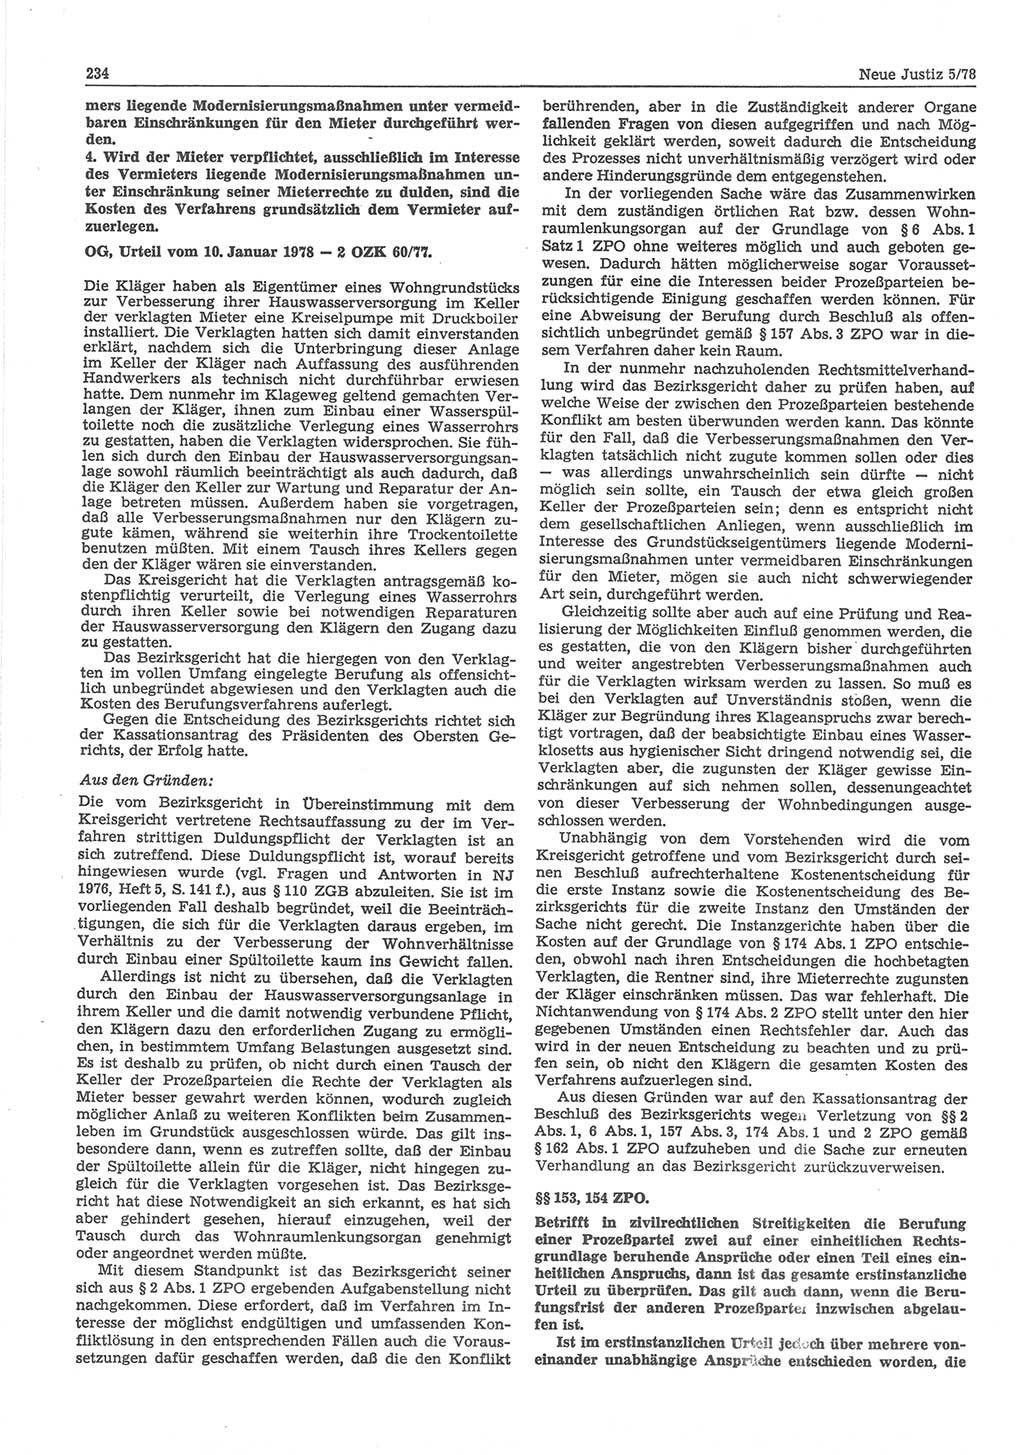 Neue Justiz (NJ), Zeitschrift für sozialistisches Recht und Gesetzlichkeit [Deutsche Demokratische Republik (DDR)], 32. Jahrgang 1978, Seite 234 (NJ DDR 1978, S. 234)